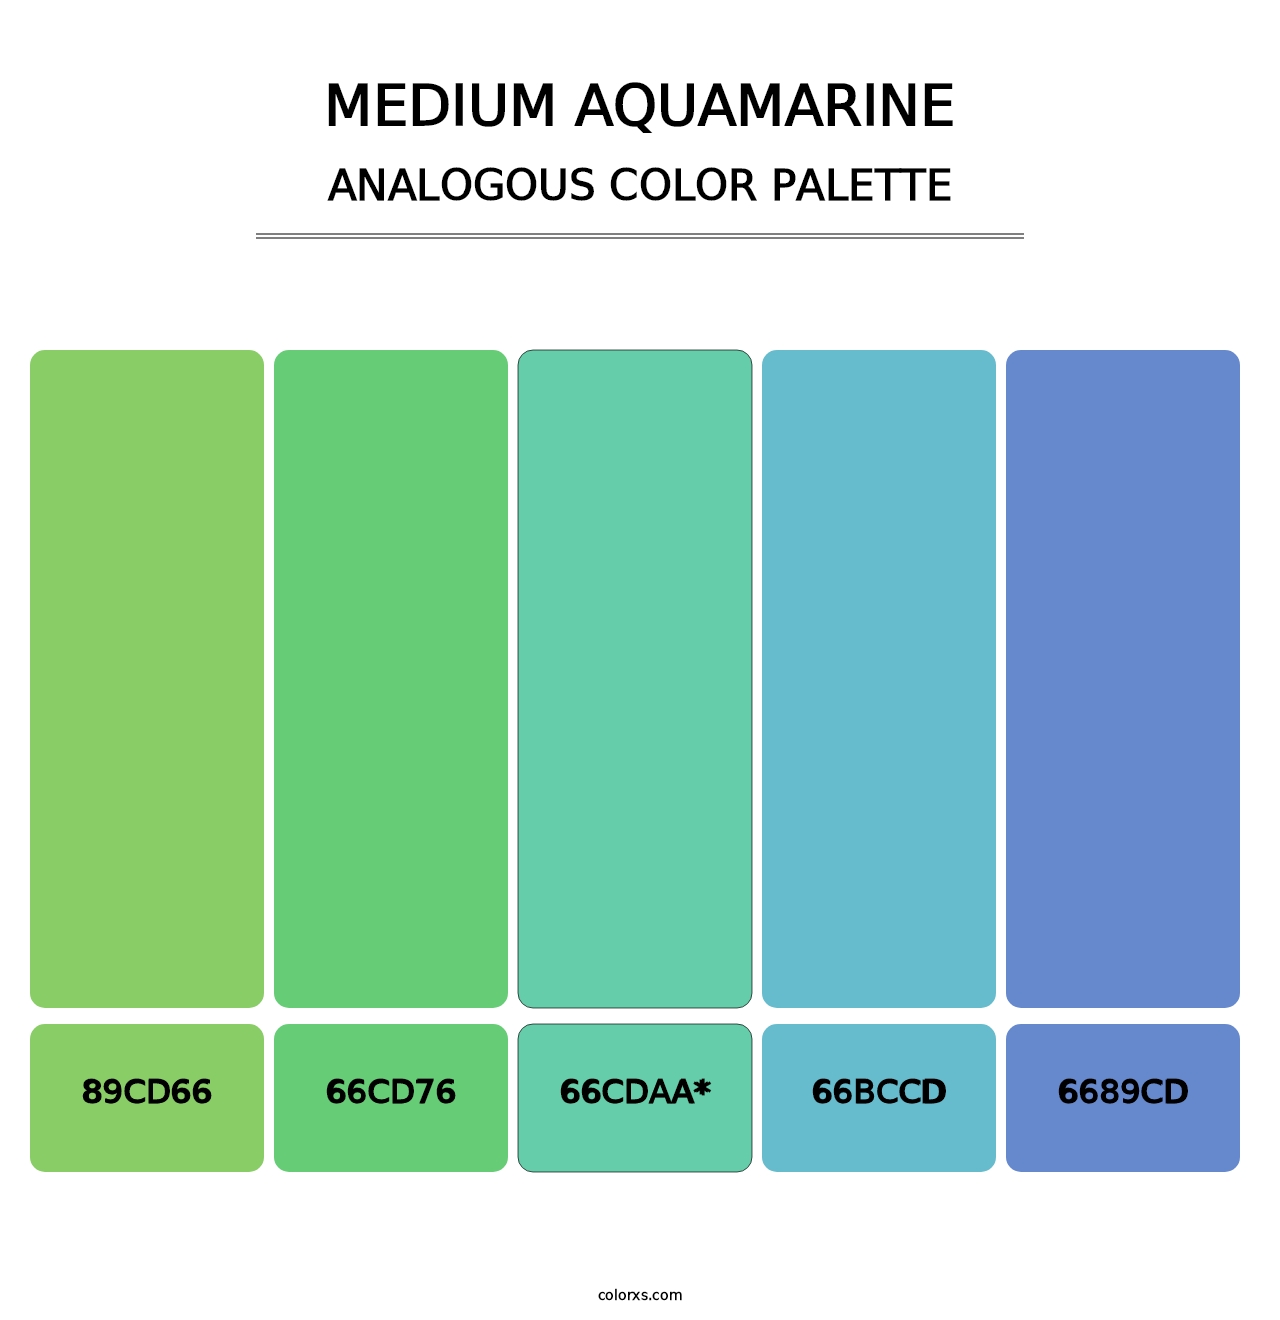 Medium Aquamarine - Analogous Color Palette